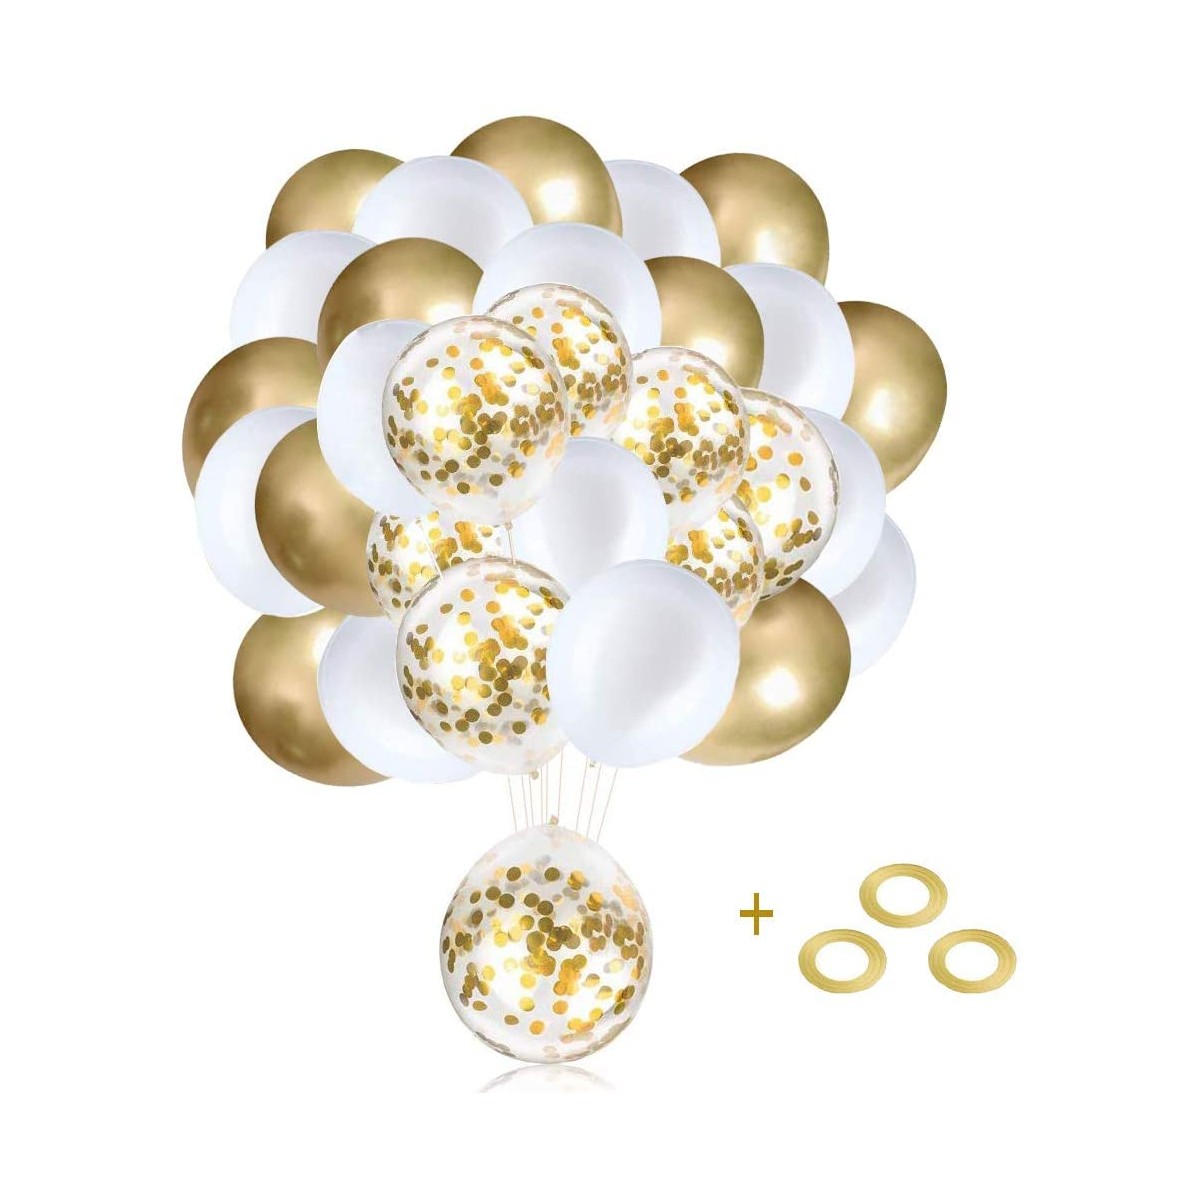 Set da 60 palloncini oro in lattice, composizione per feste